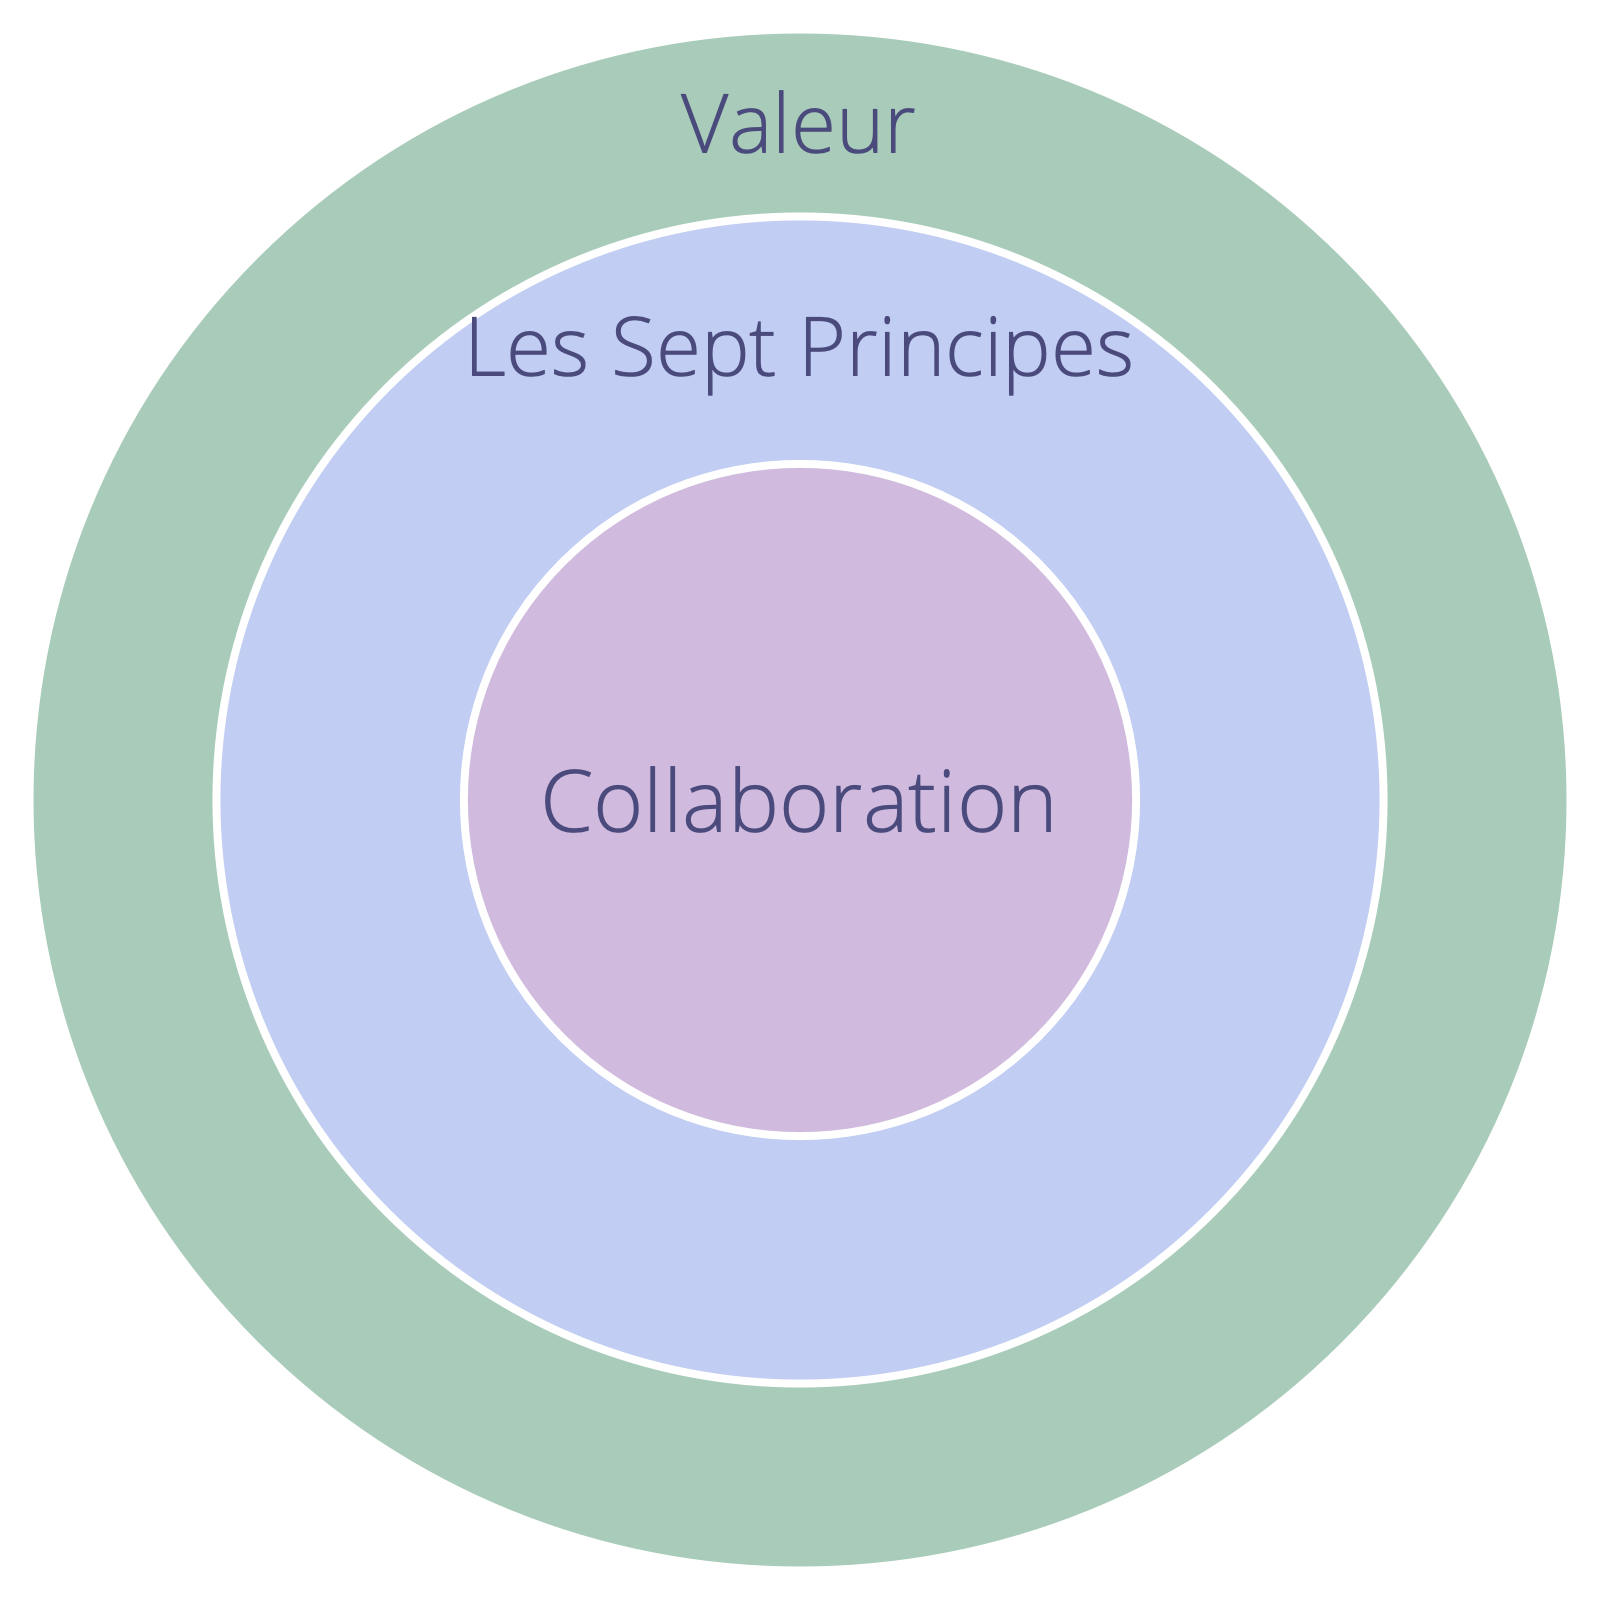 Les valeurs d'une organisation doivent supporter les sept principes